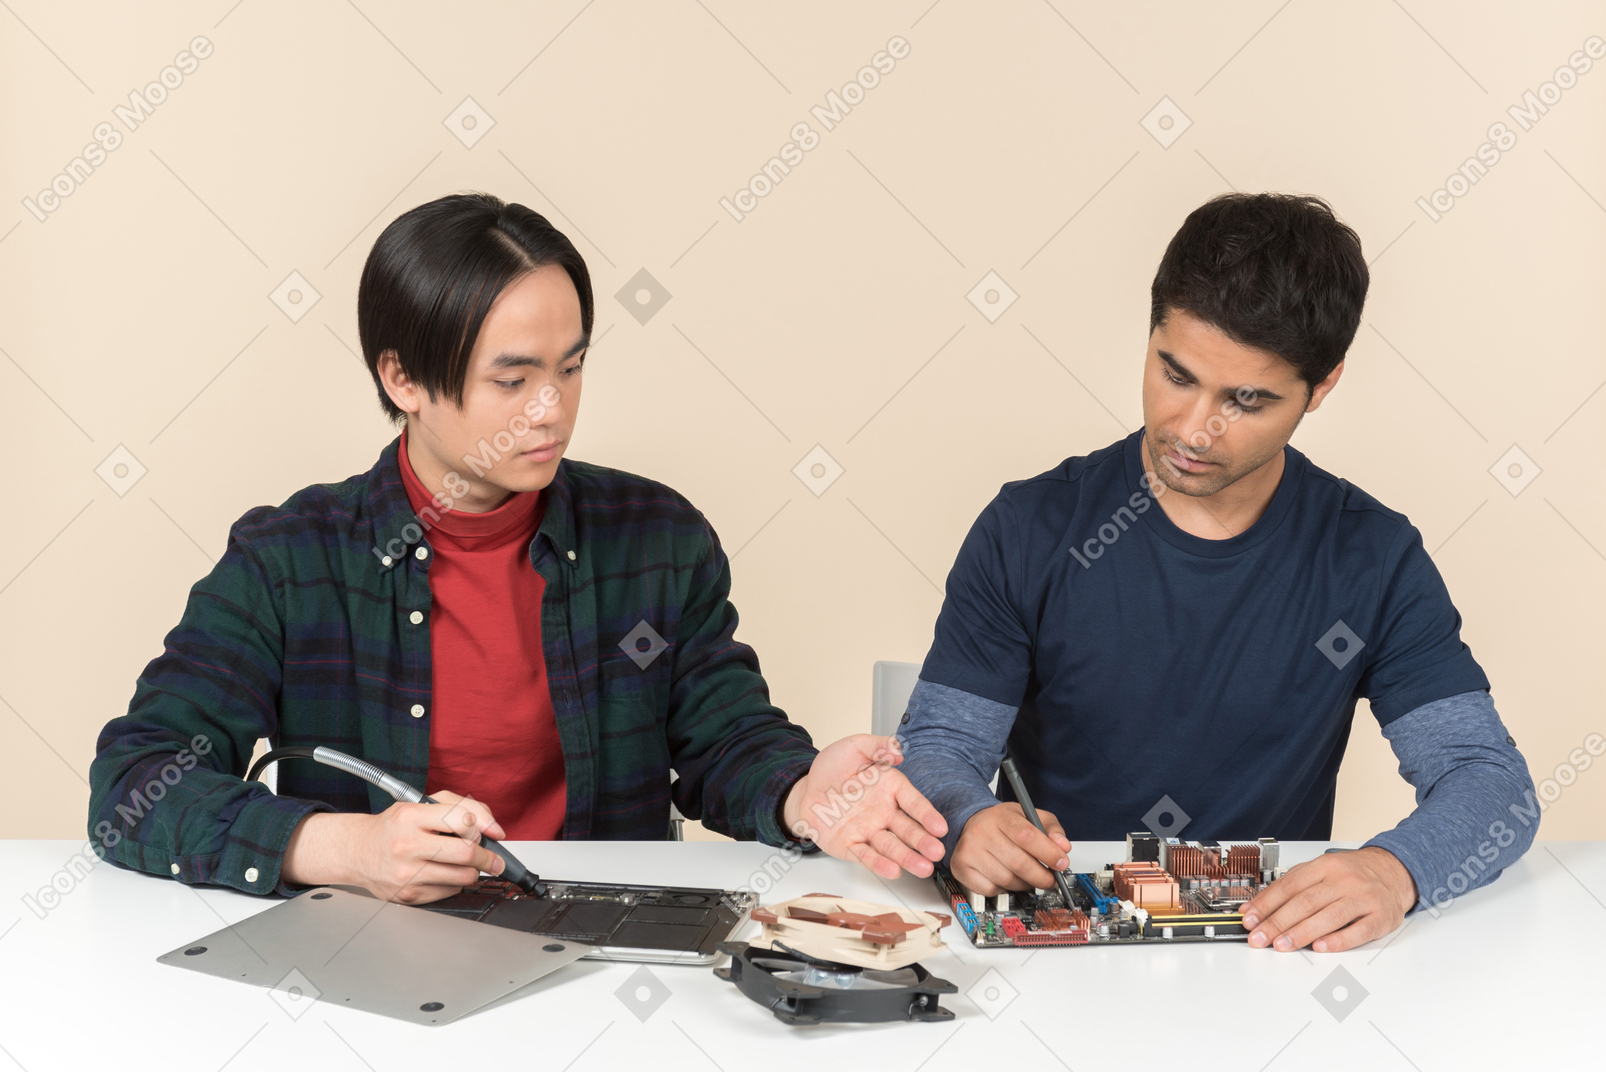 Два молодых вундеркинда с некоторыми деталями на столе, имеющие некоторые проблемы